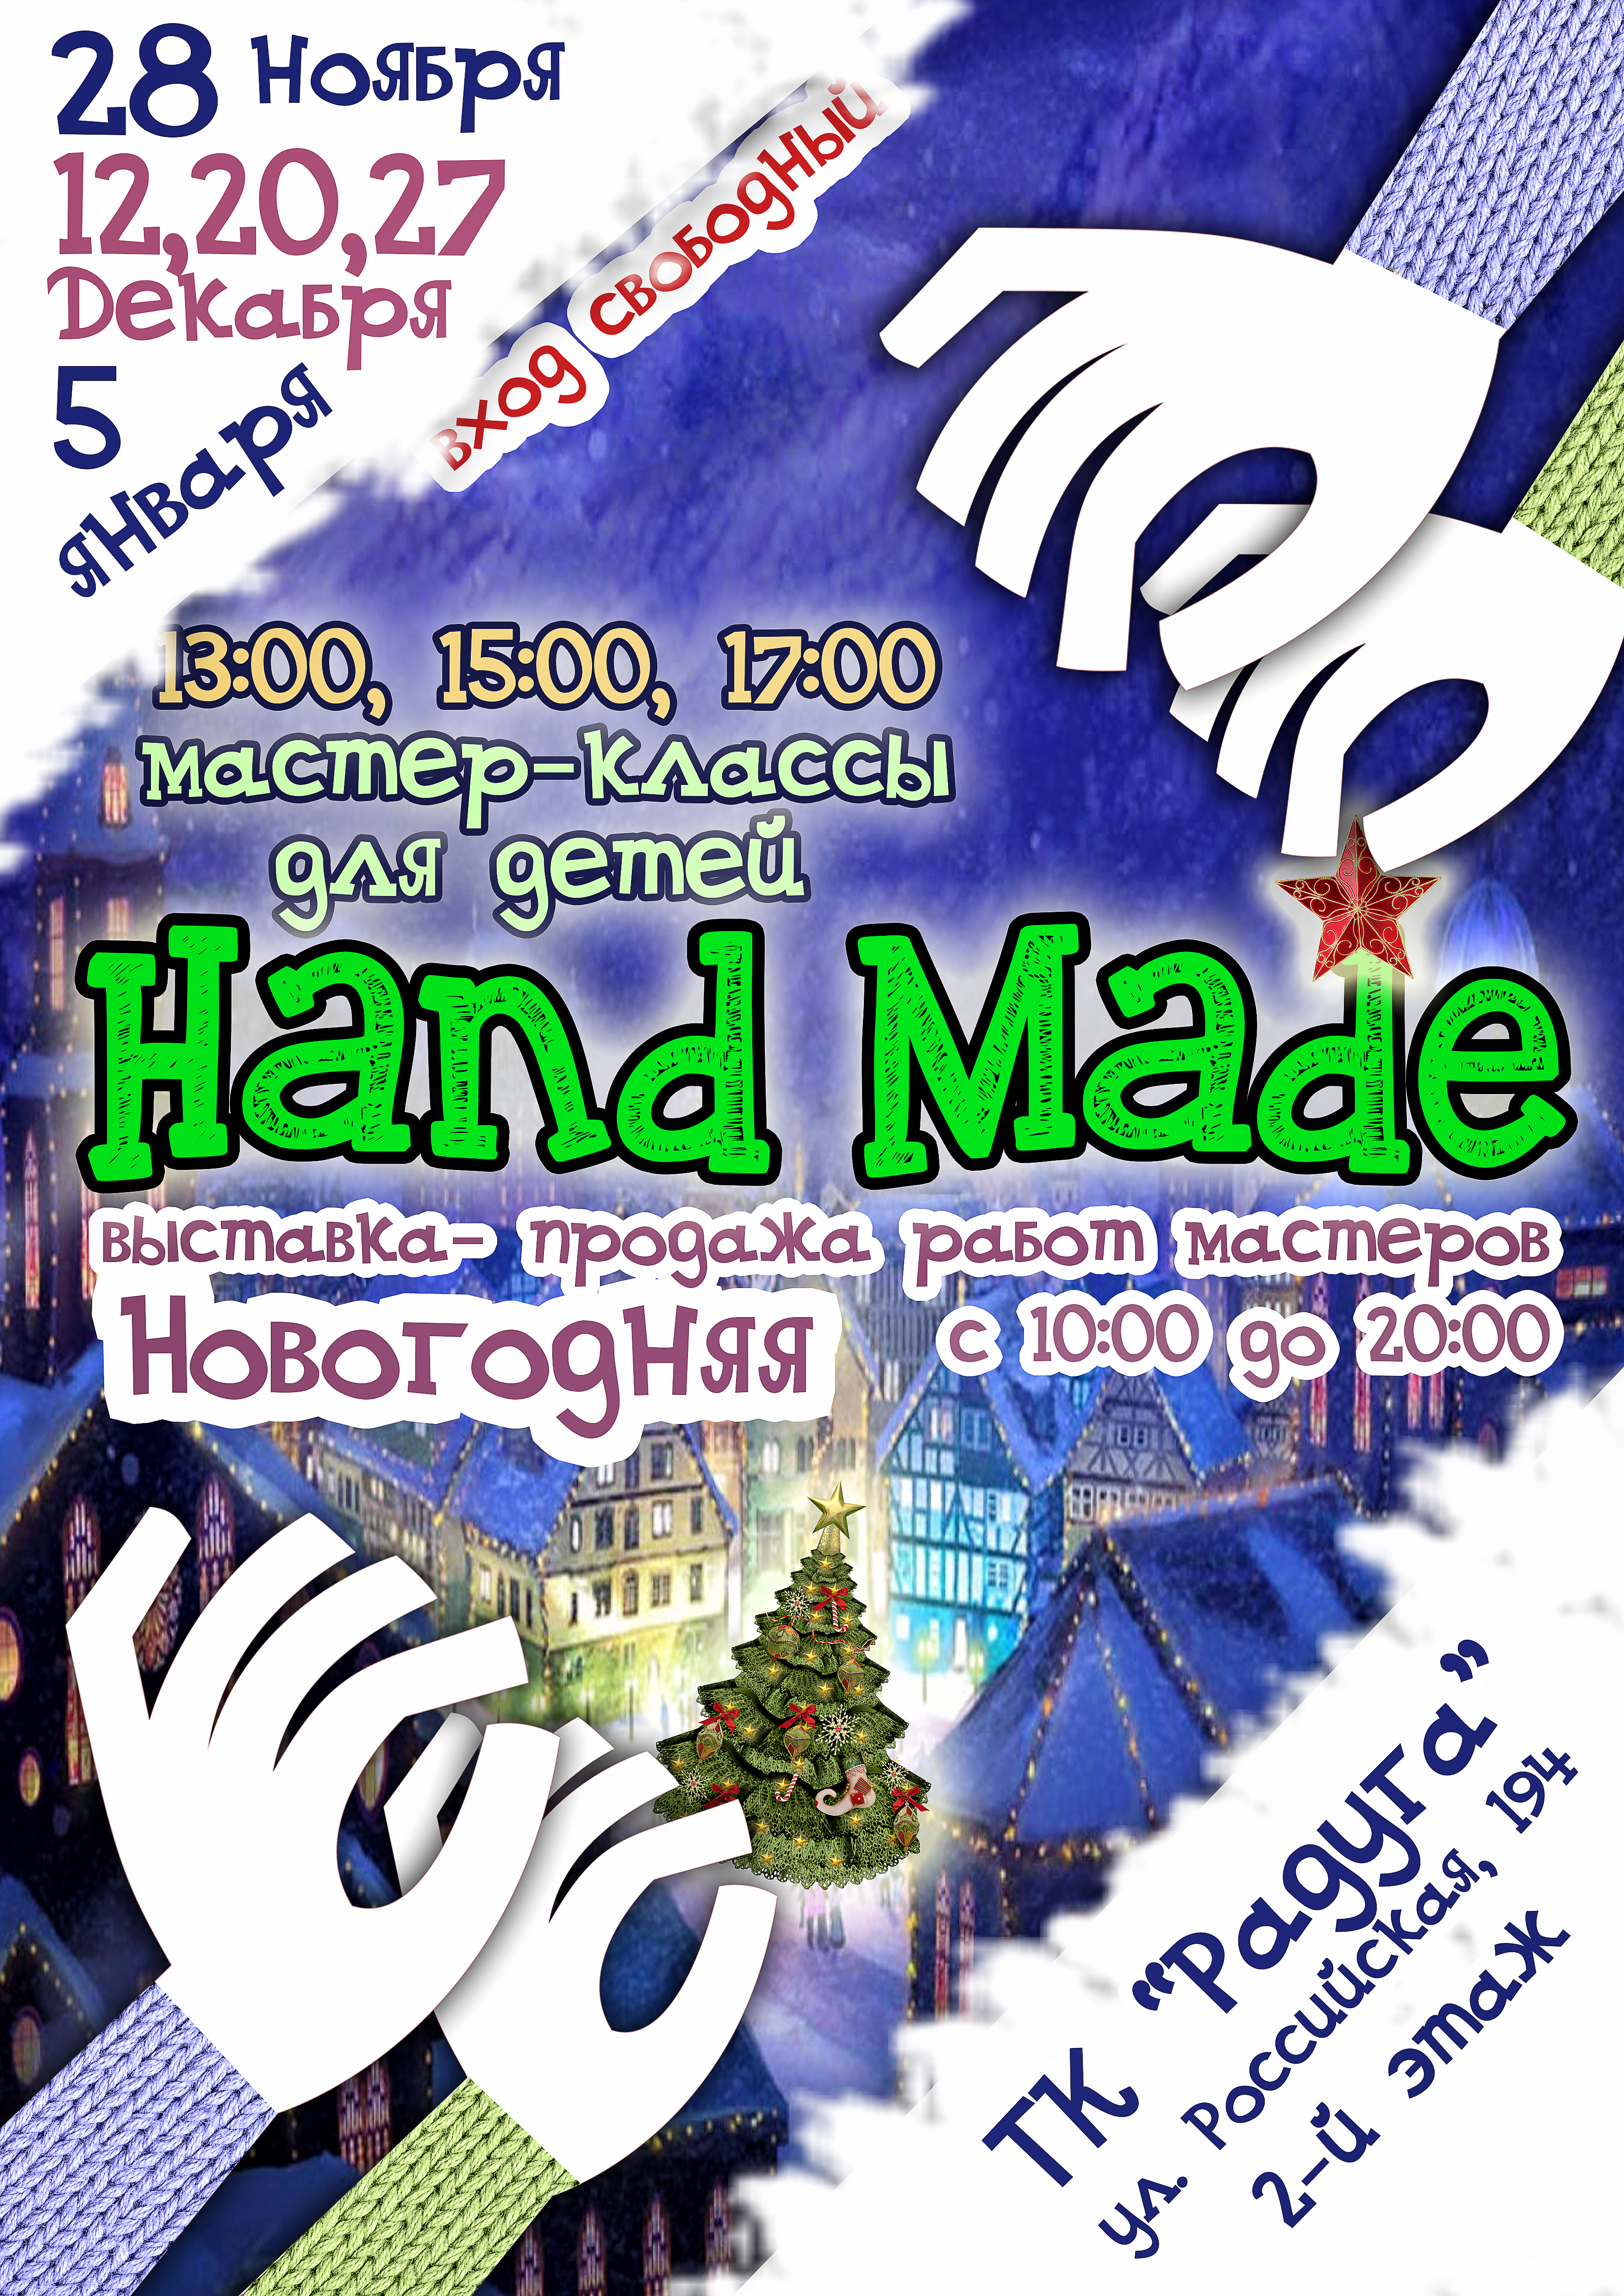 27 декабря в ТК "Радуга" пройдут Выставка Hand Made новогодние Мастер-классы.